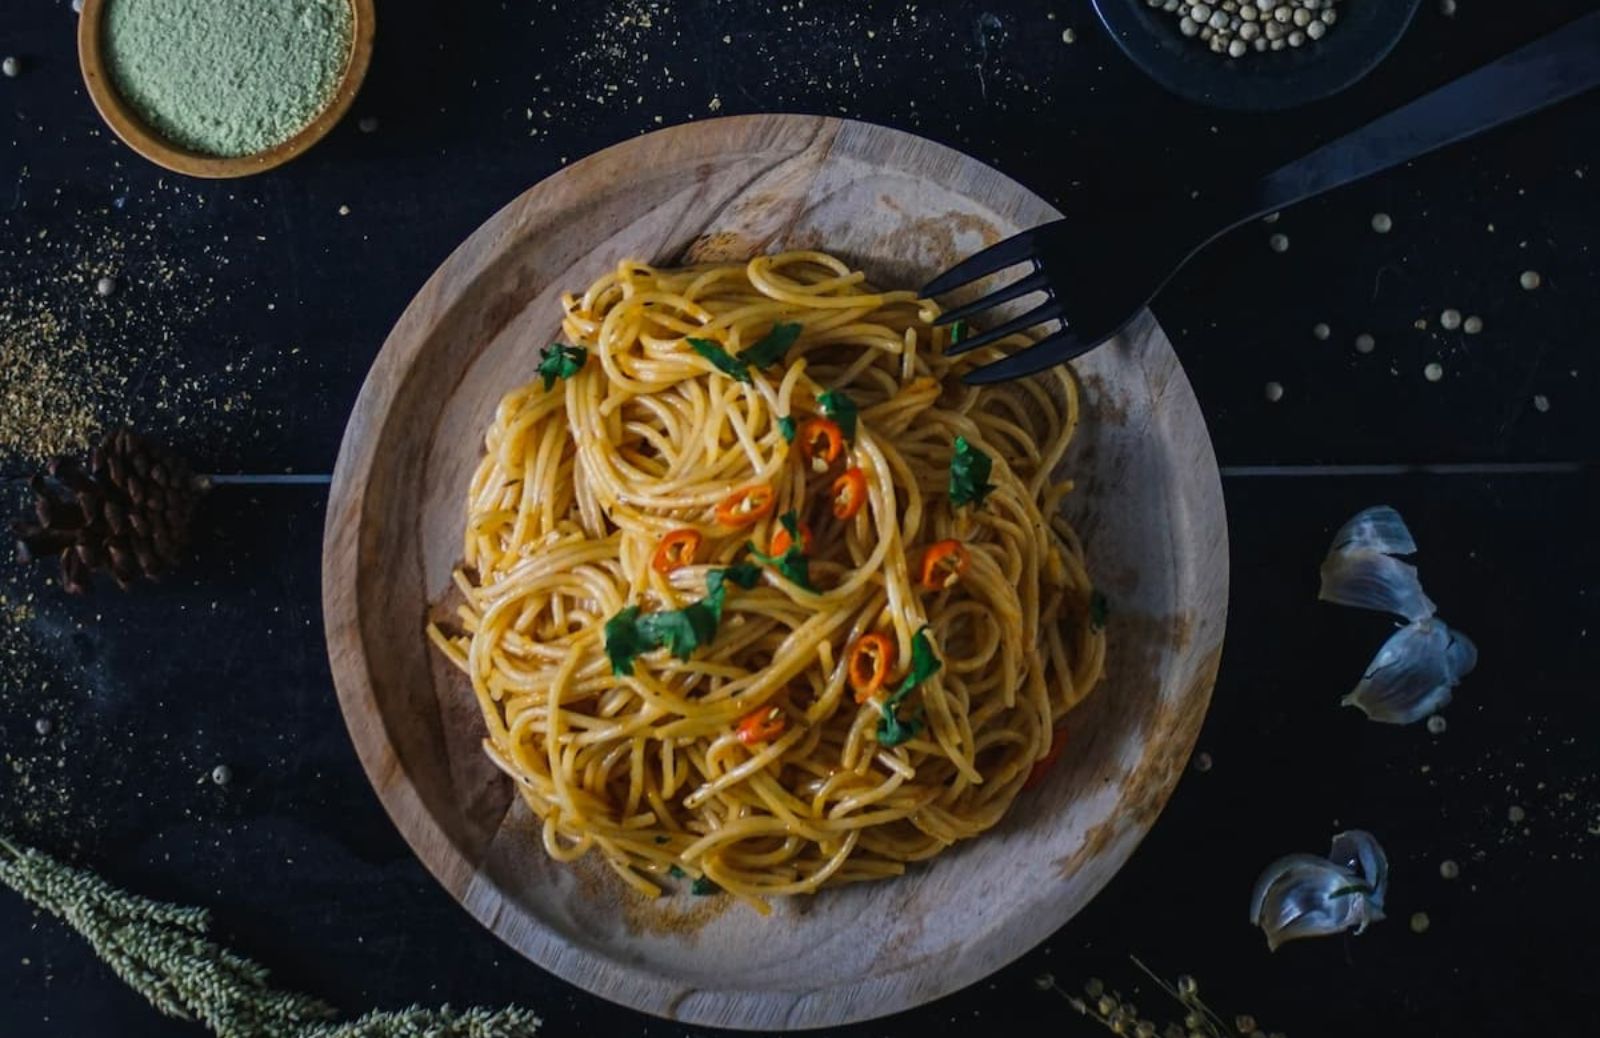 Spaghetti aglio, olio e peperoncino: una ricetta, mille varianti